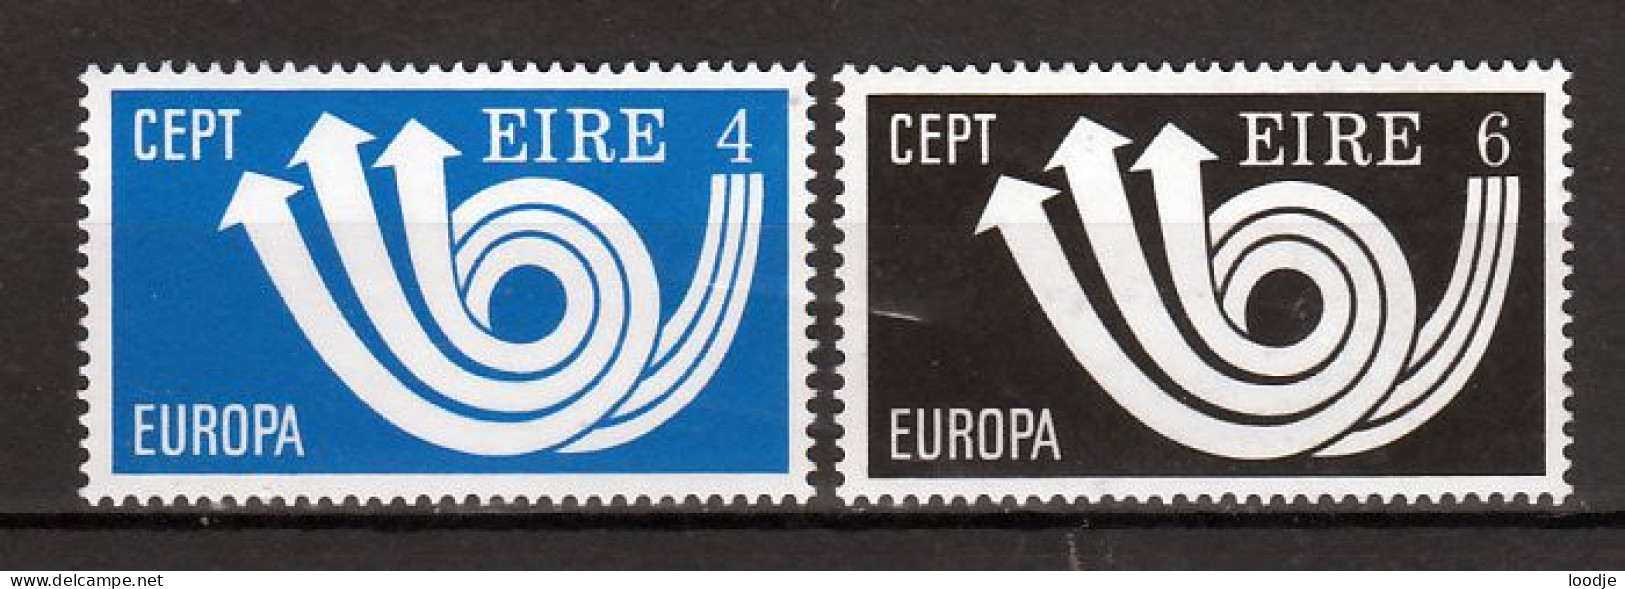 Ierland Europa Cept 1973 Postfris - 1973